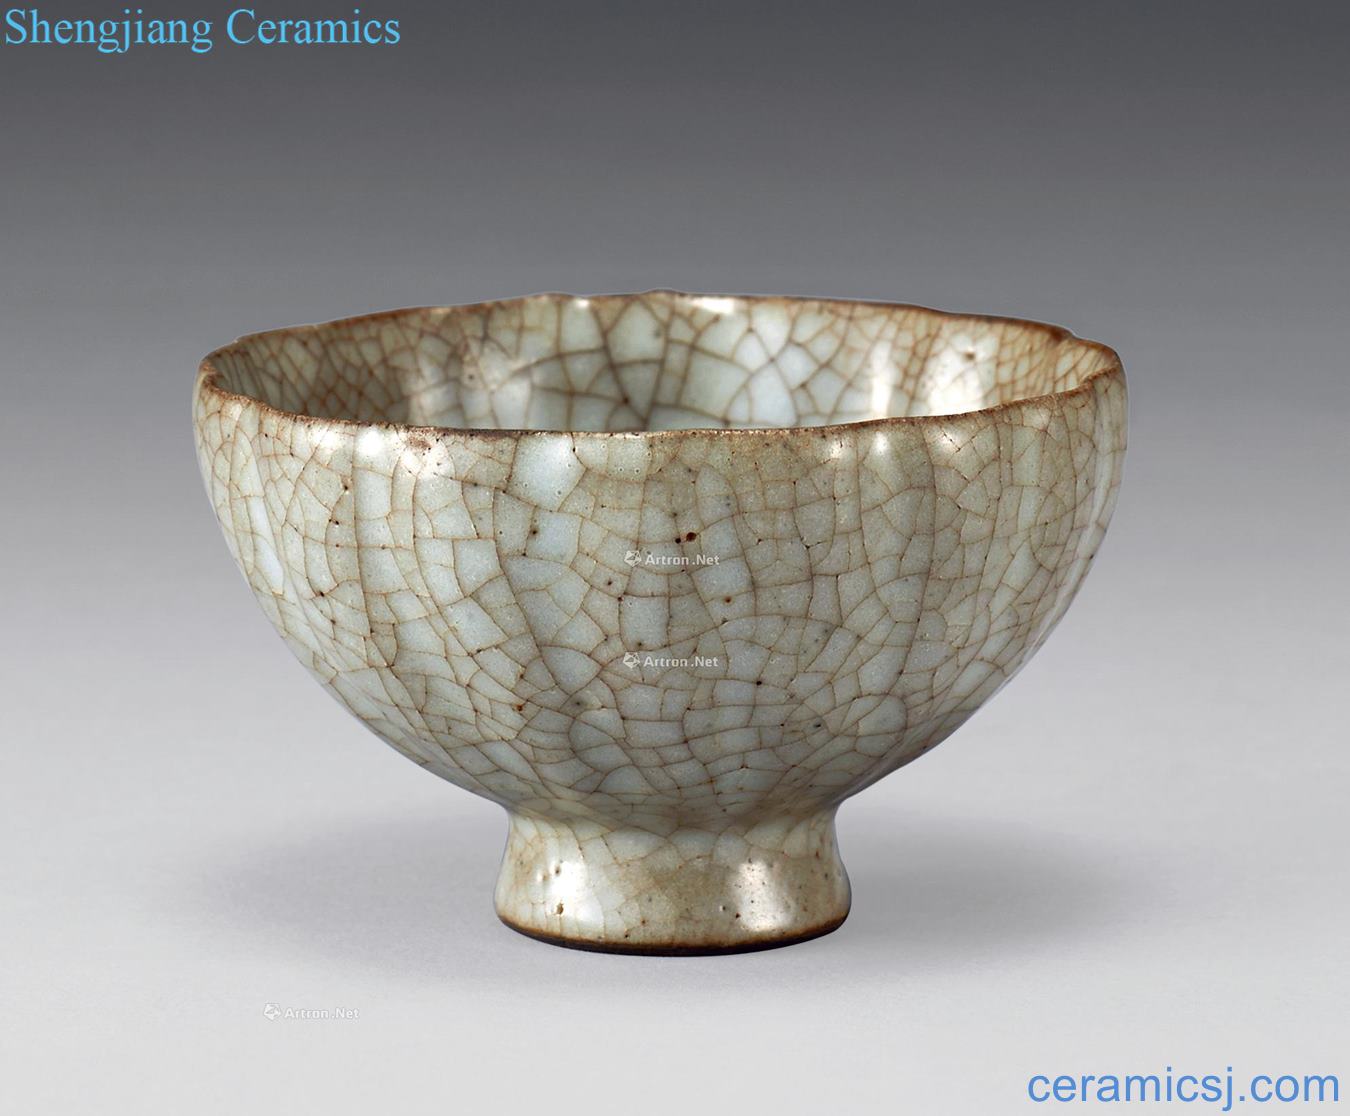 Song or yuan Kiln type petals bowl